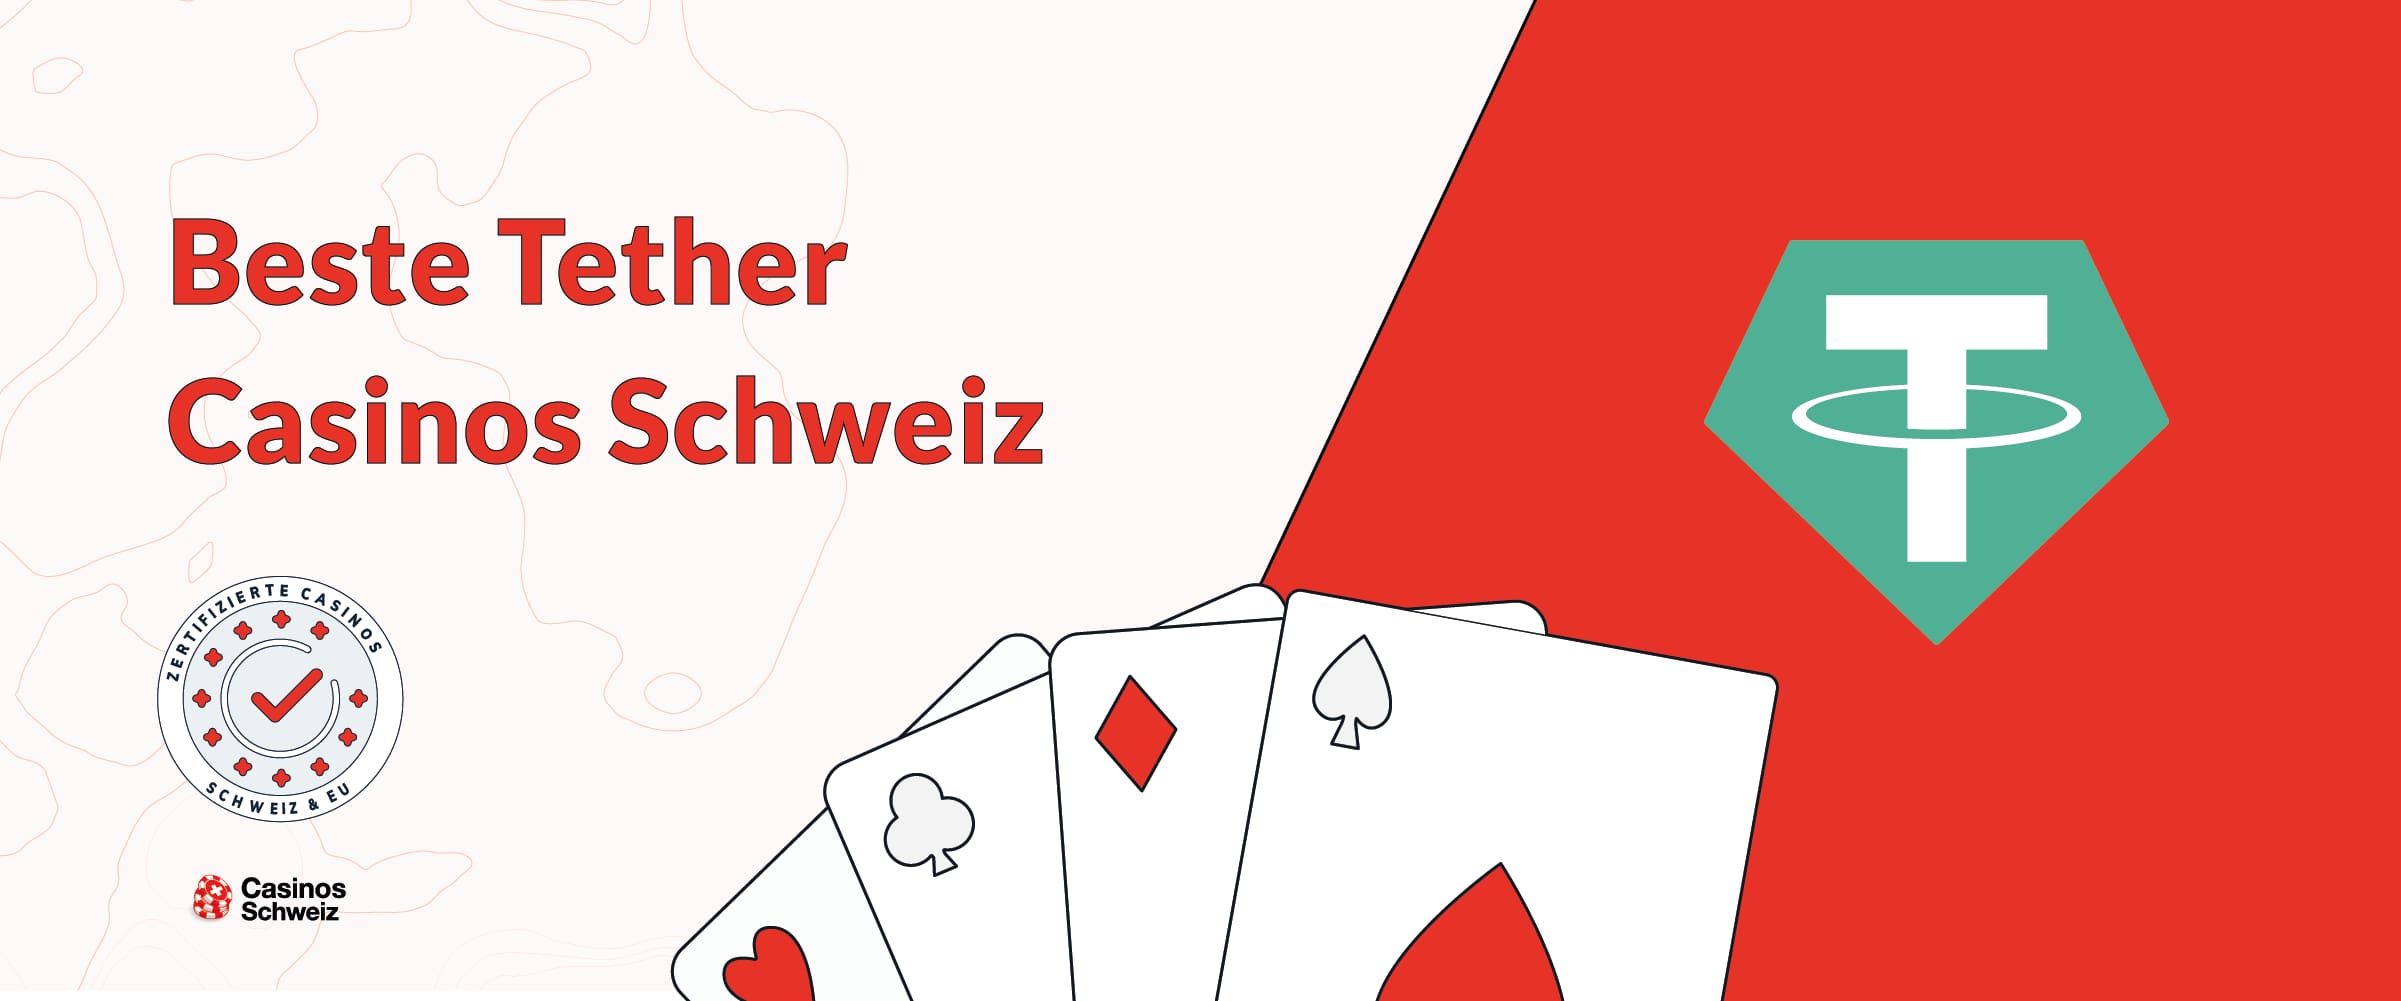 Beste Tether Casinos Schweiz